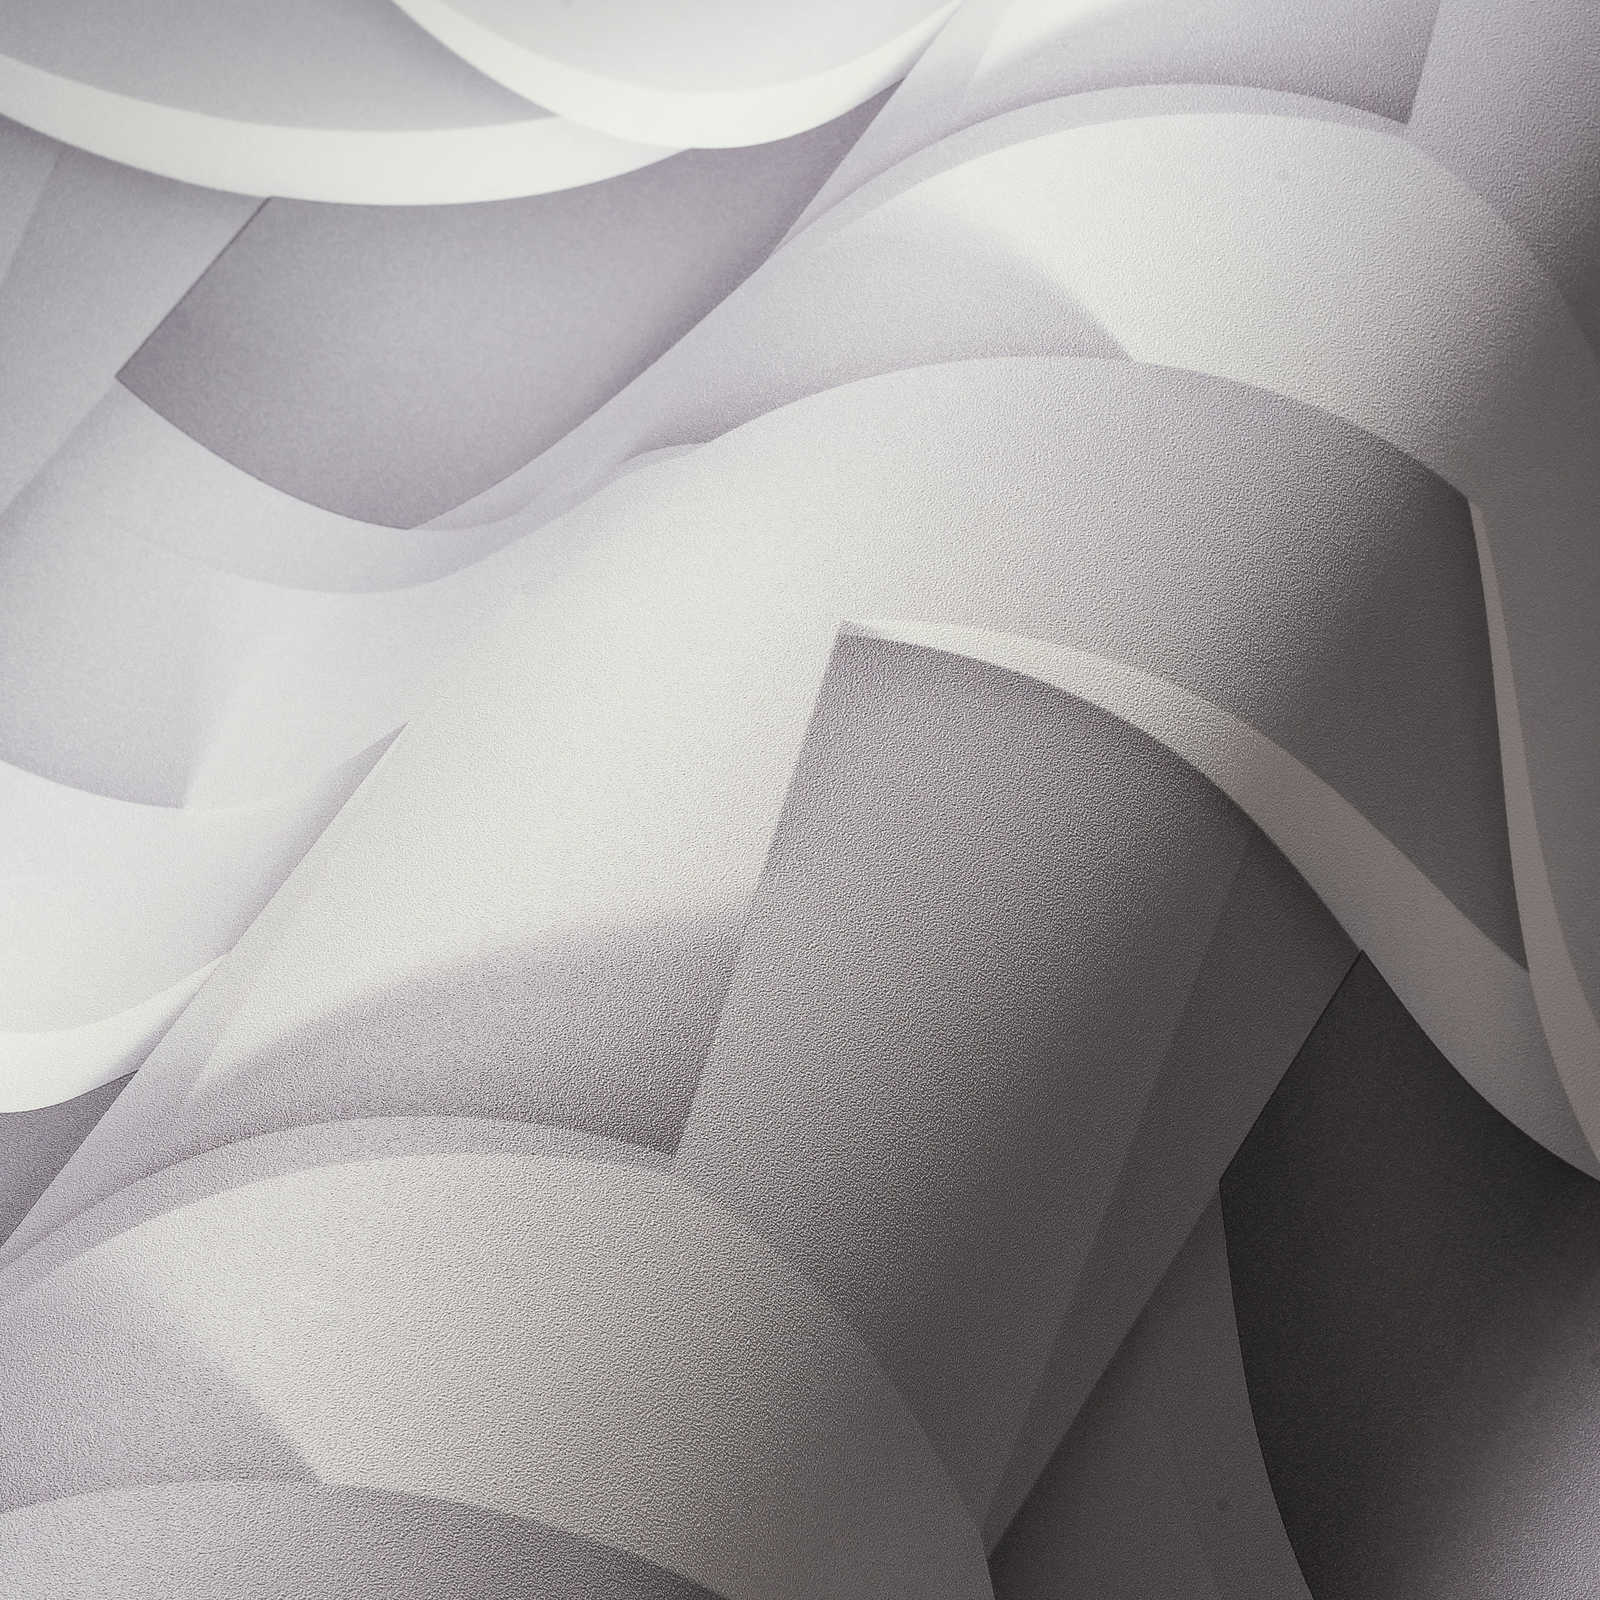             Papier peint 3D motif graphique gris clair avec aspect béton
        